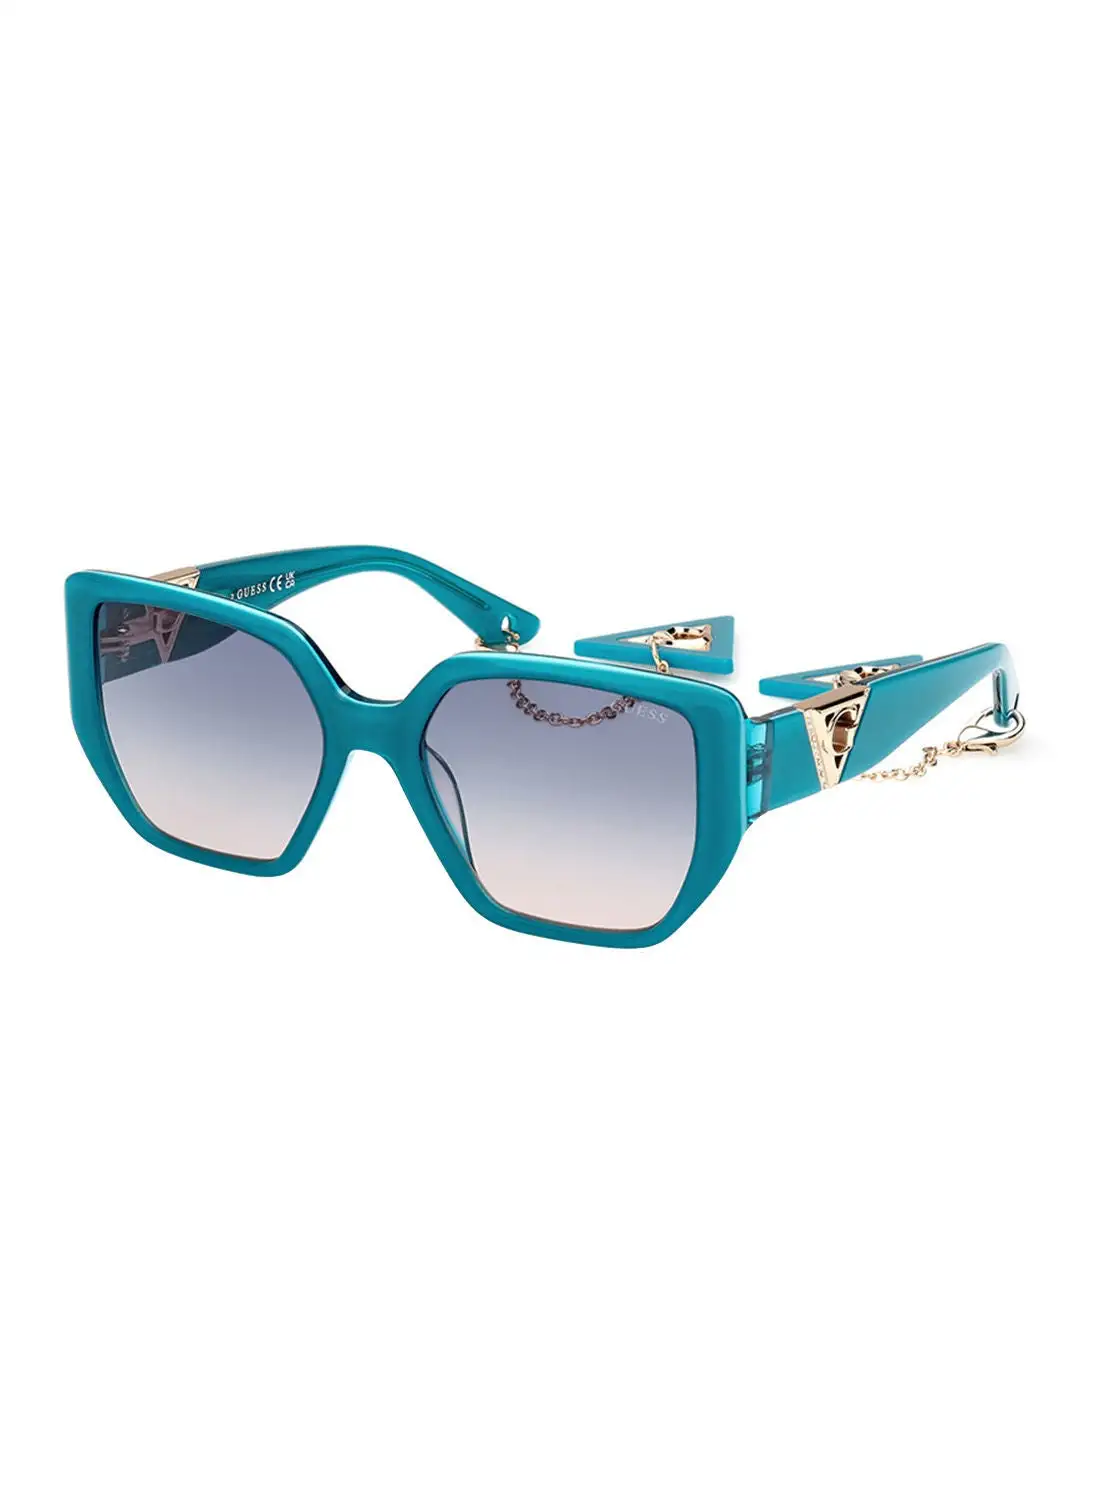 GUESS Sunglasses For Women GU789287W55